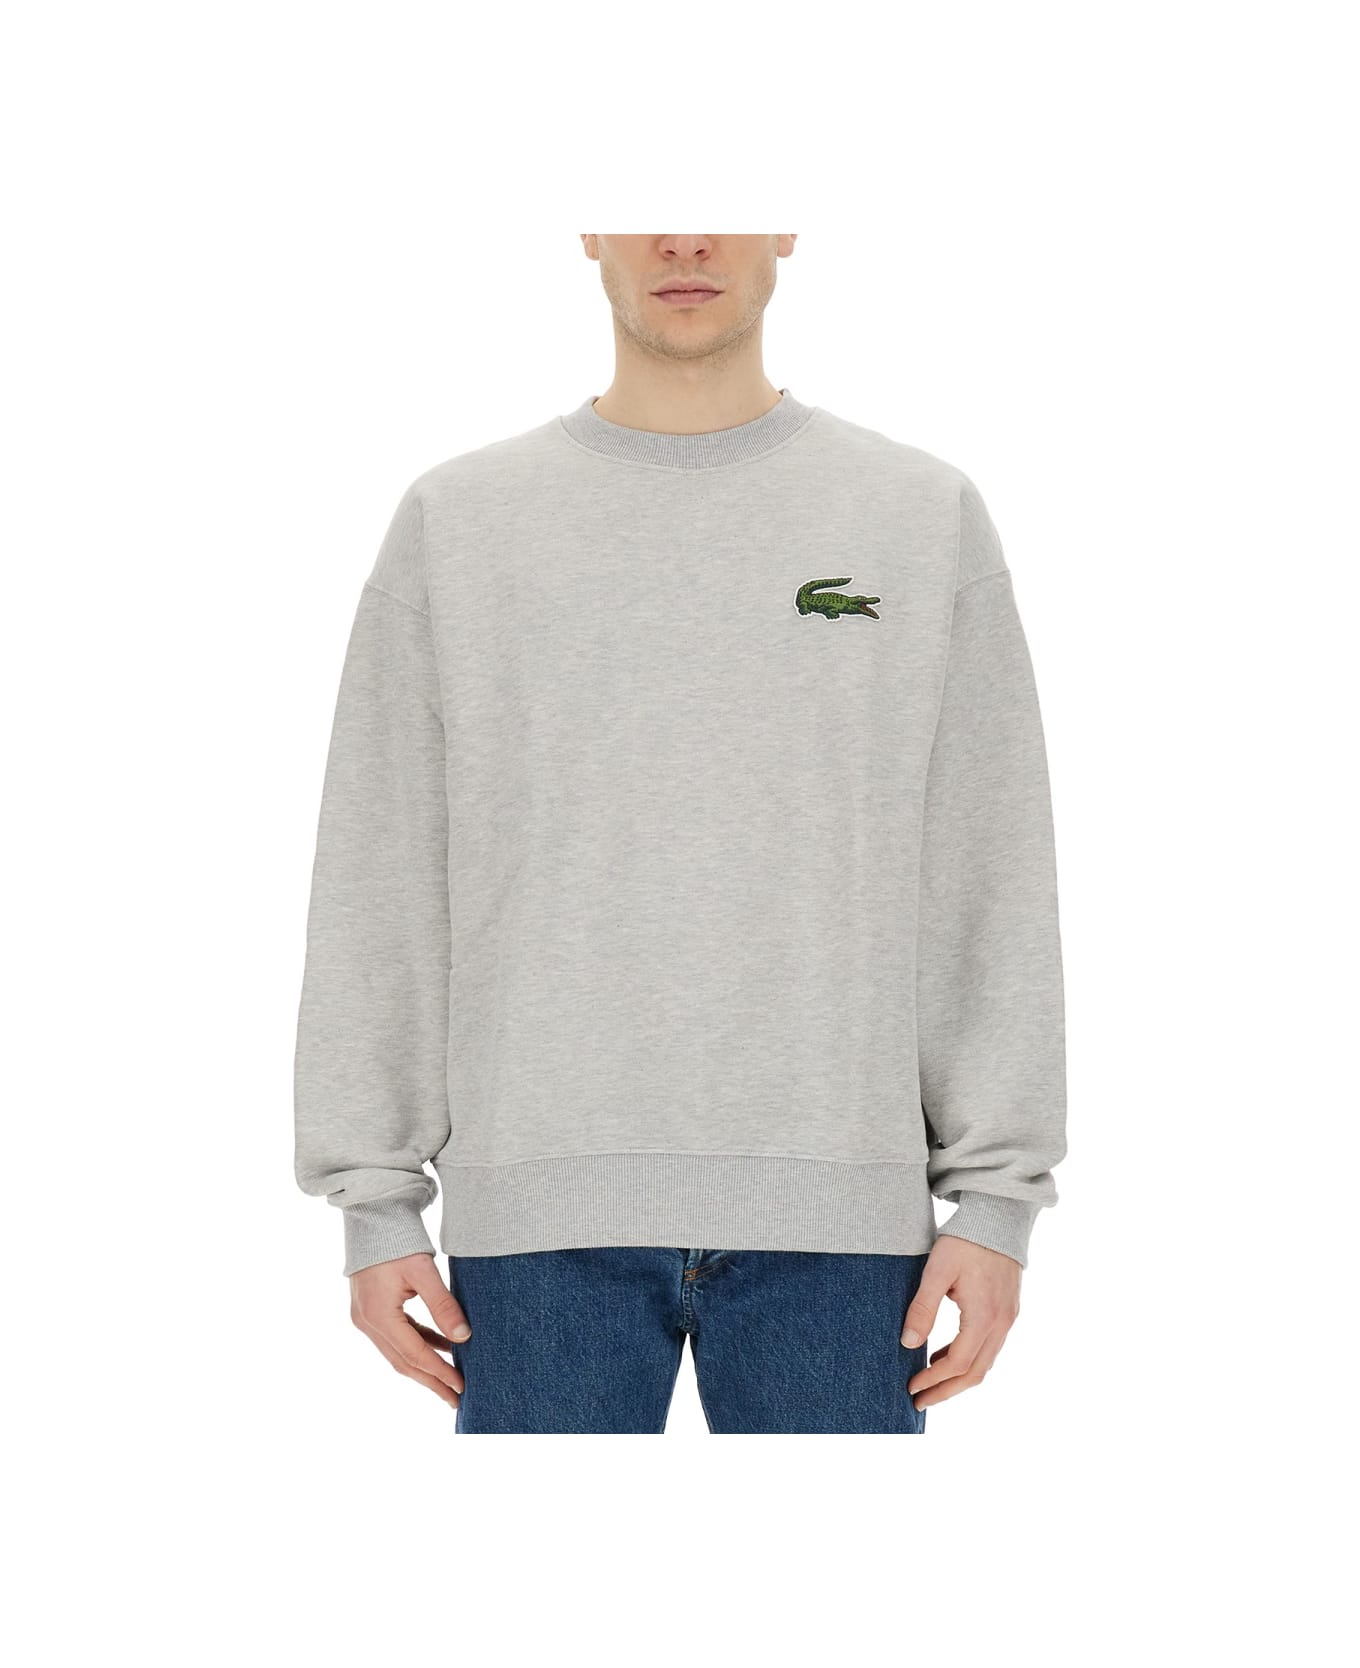 Lacoste Sweatshirt With Logo - GREY